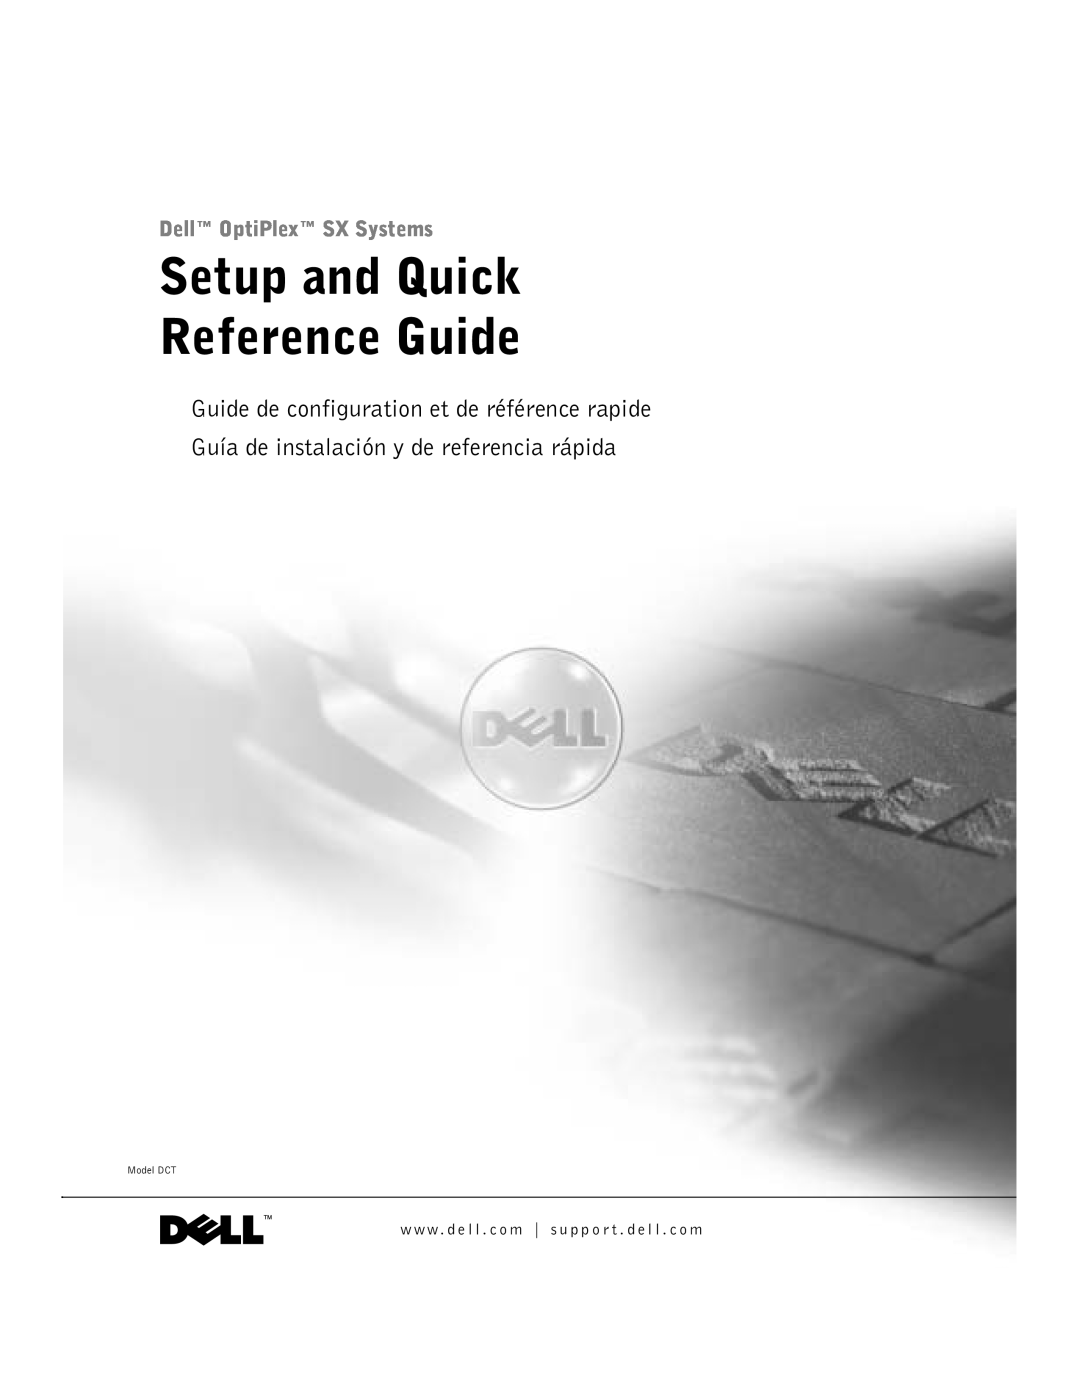 Dell manual Setup and Quick Reference Guide, Dell OptiPlex SX Systems, Guide de configuration et de référence rapide 